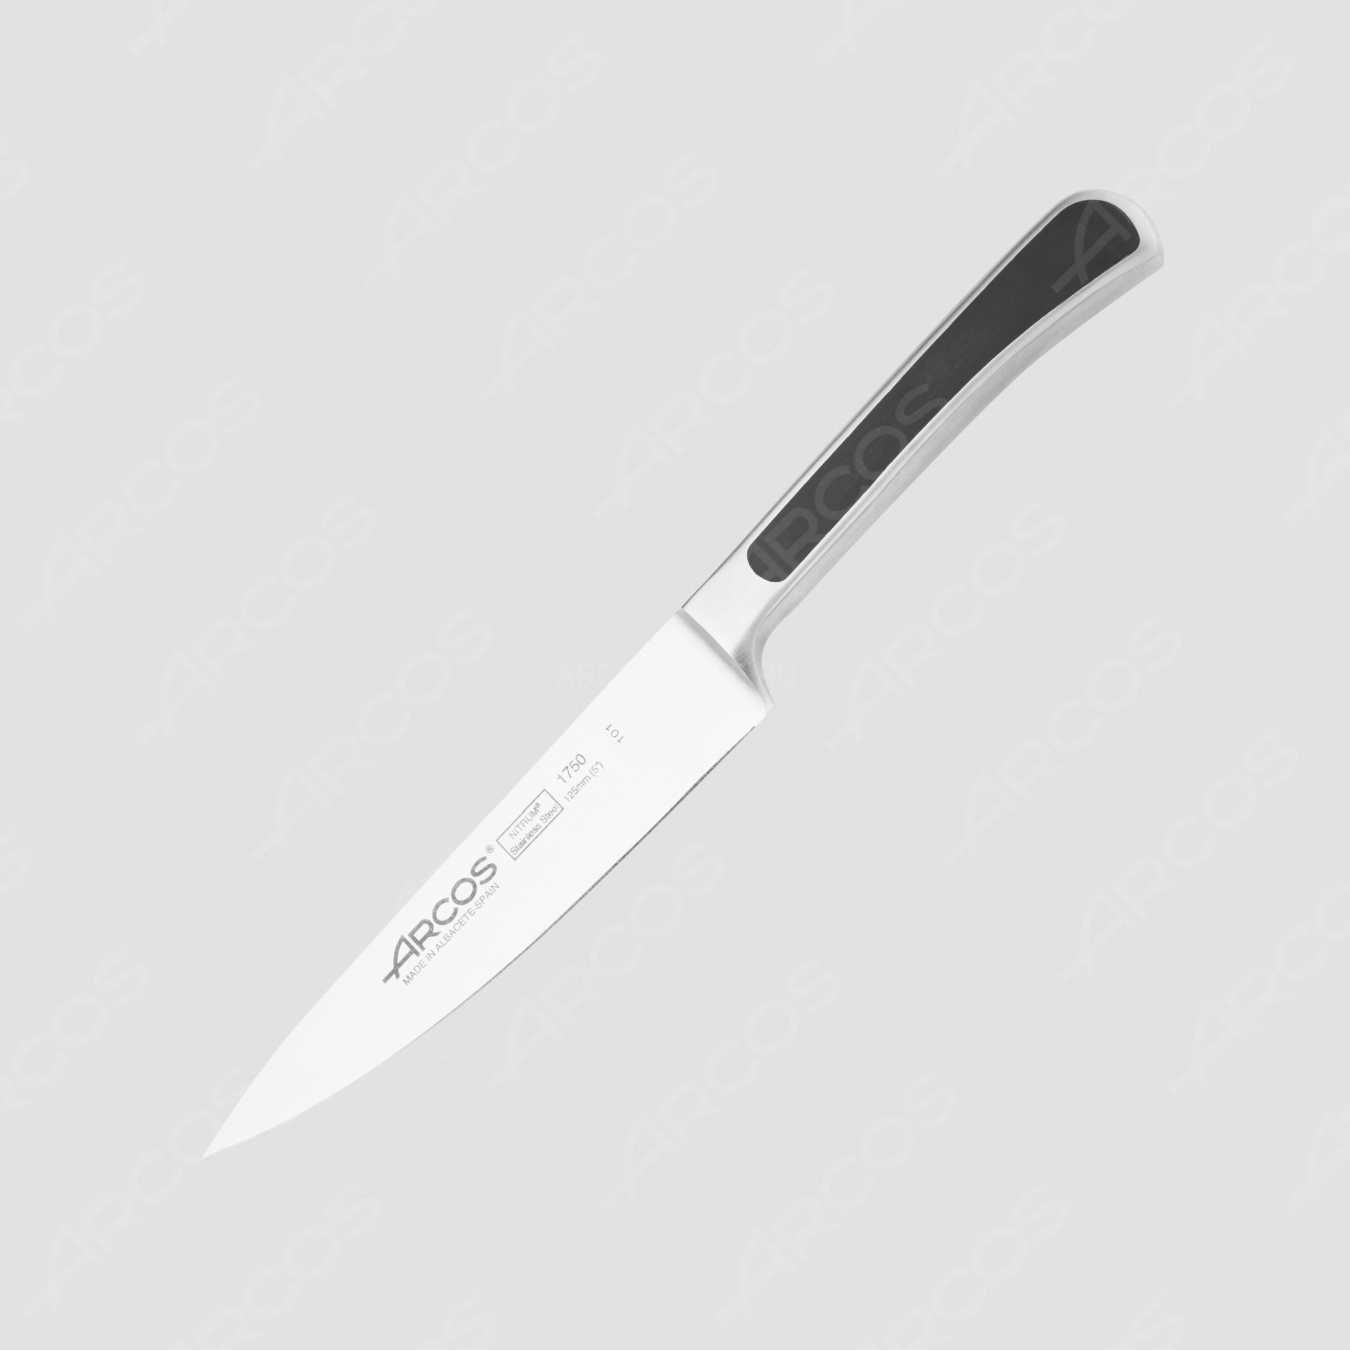 Нож кухонный овощной 12,5 см, серия Saeta, ARCOS, Испания